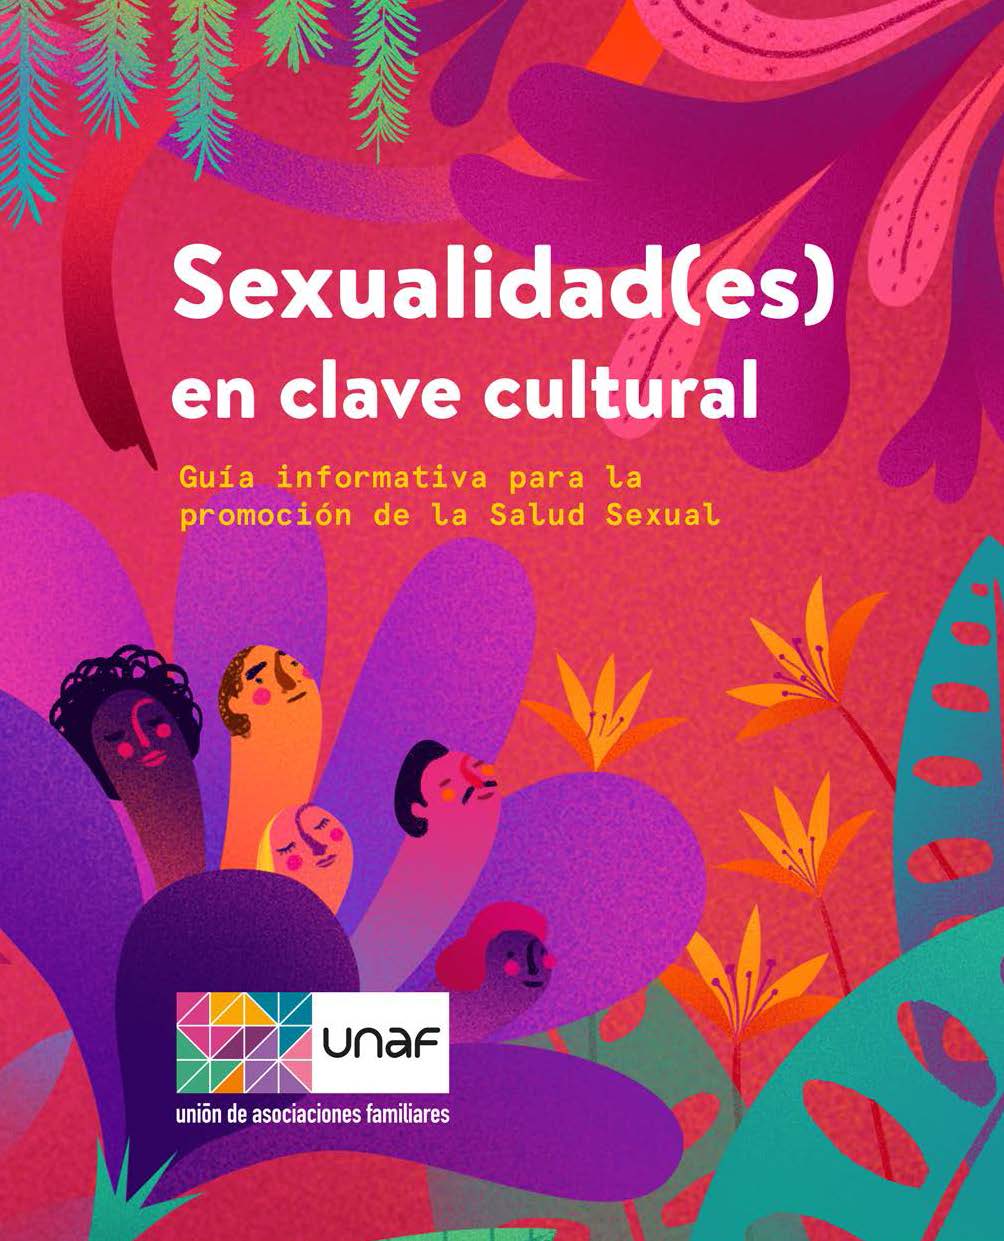 Sexualidad es en clave cultural guía informativa para la promoción